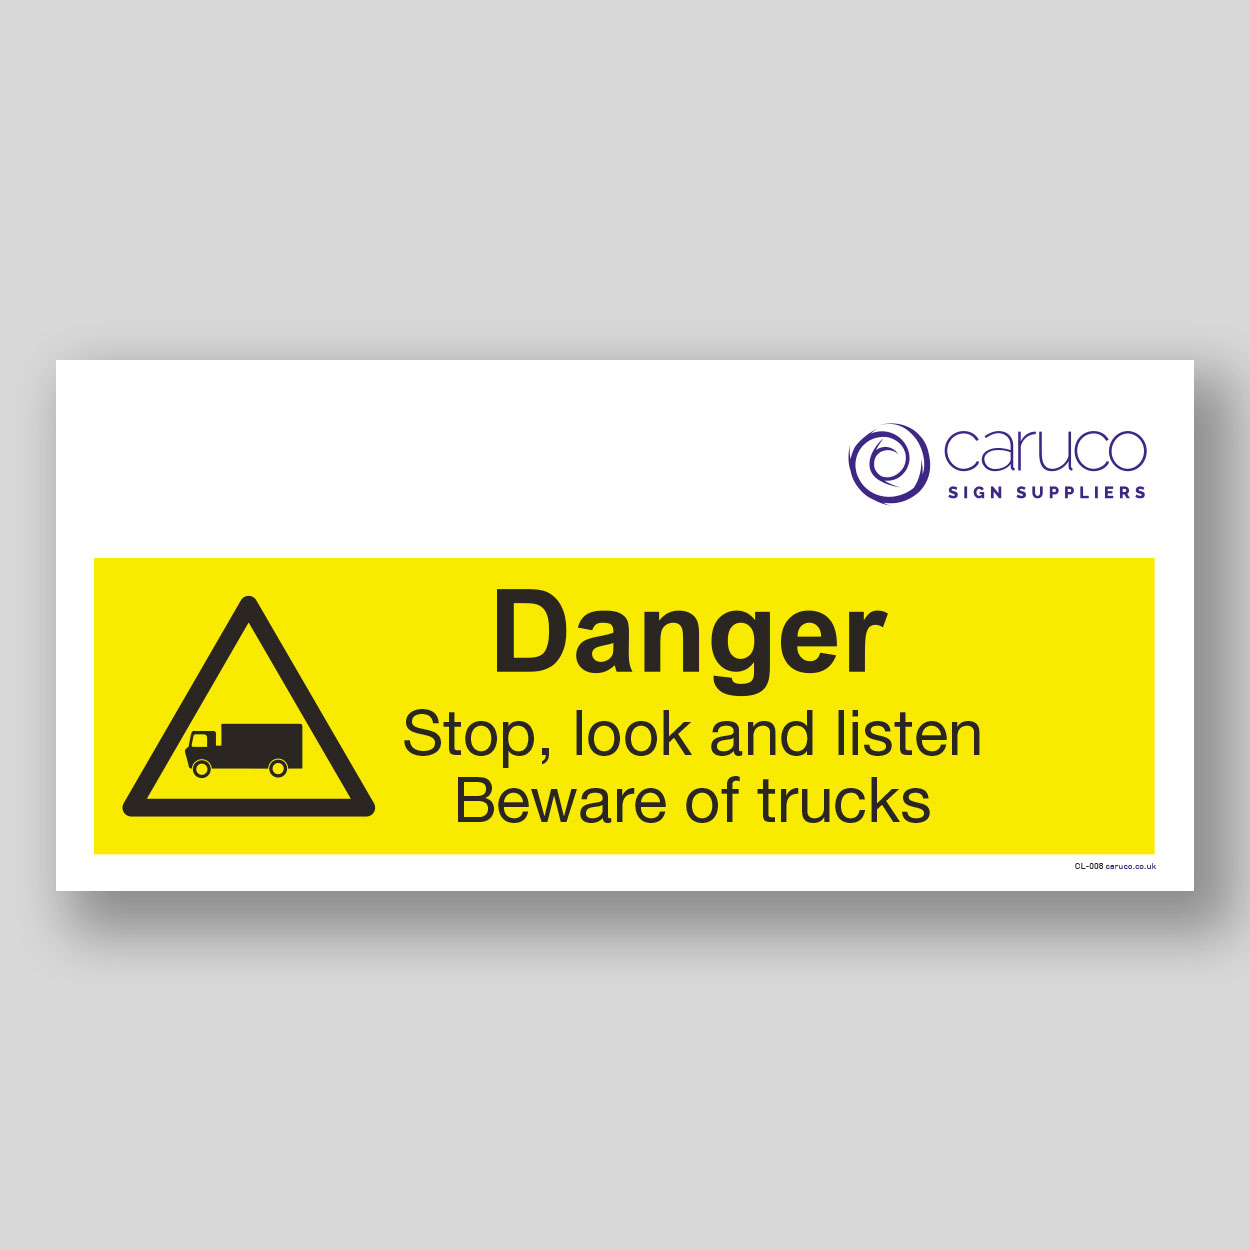 CL-008 Danger - stop look and listen